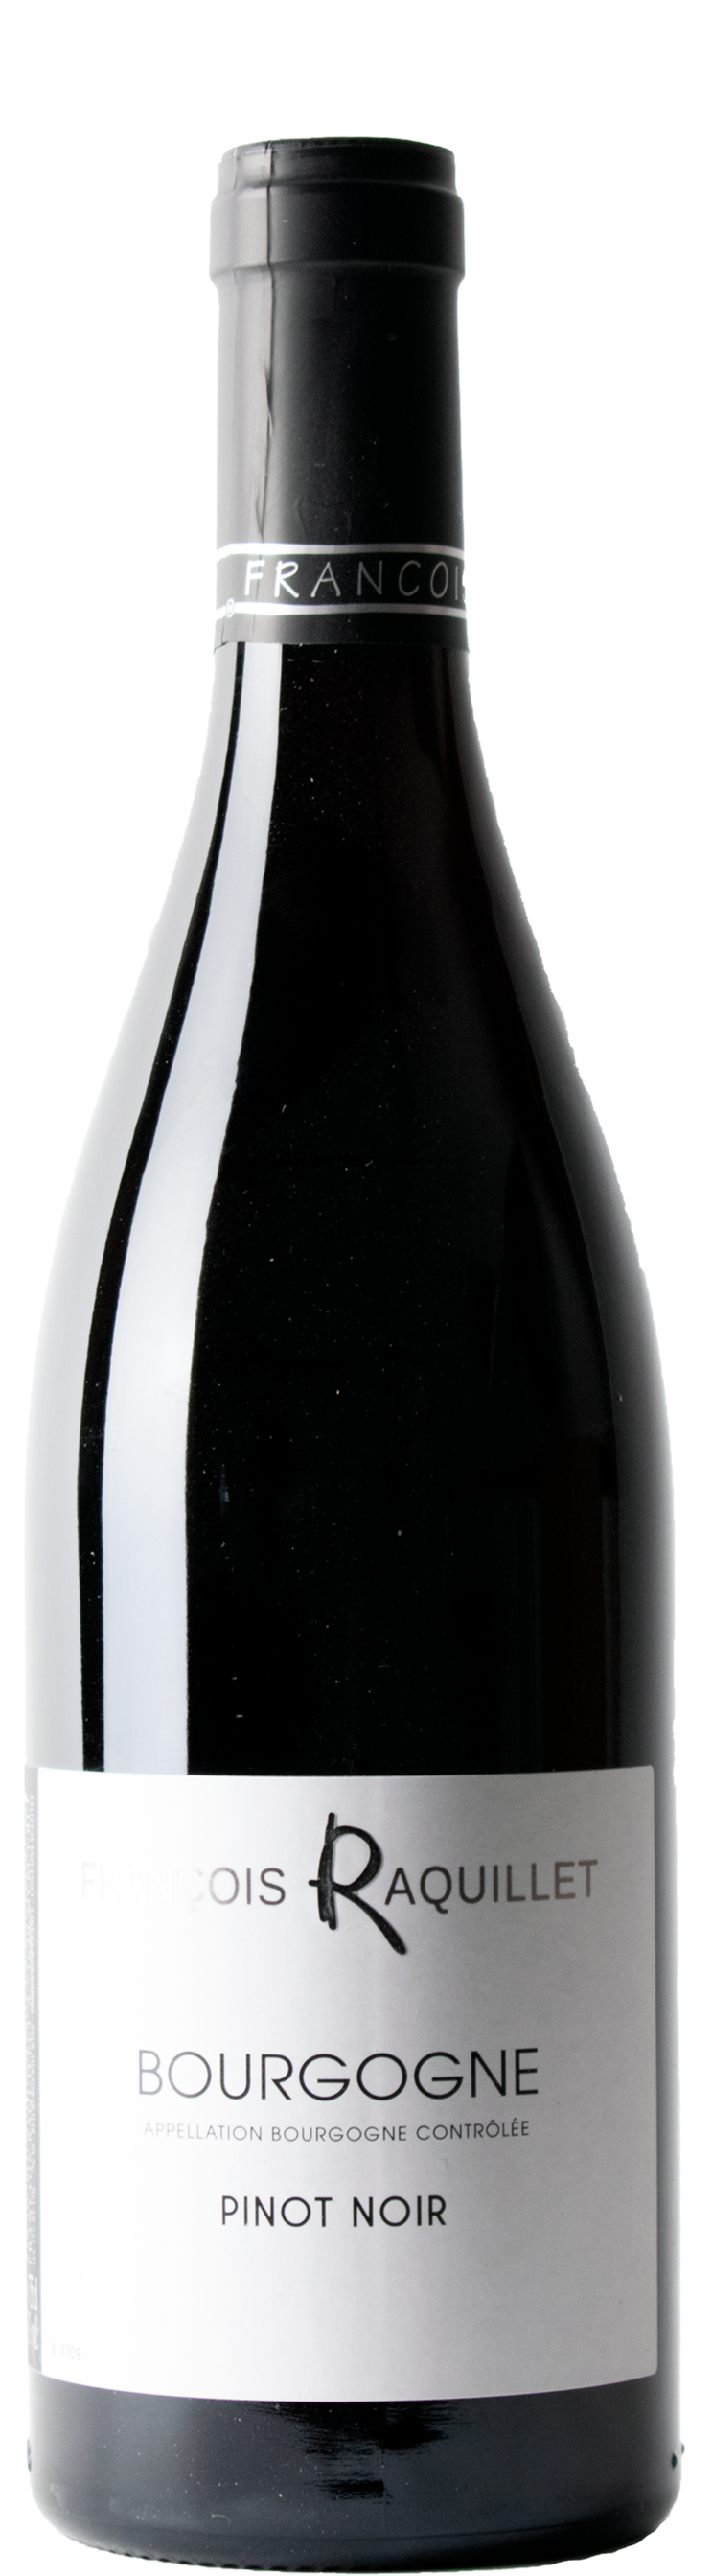 Bourgogne Pinot Noir 2020